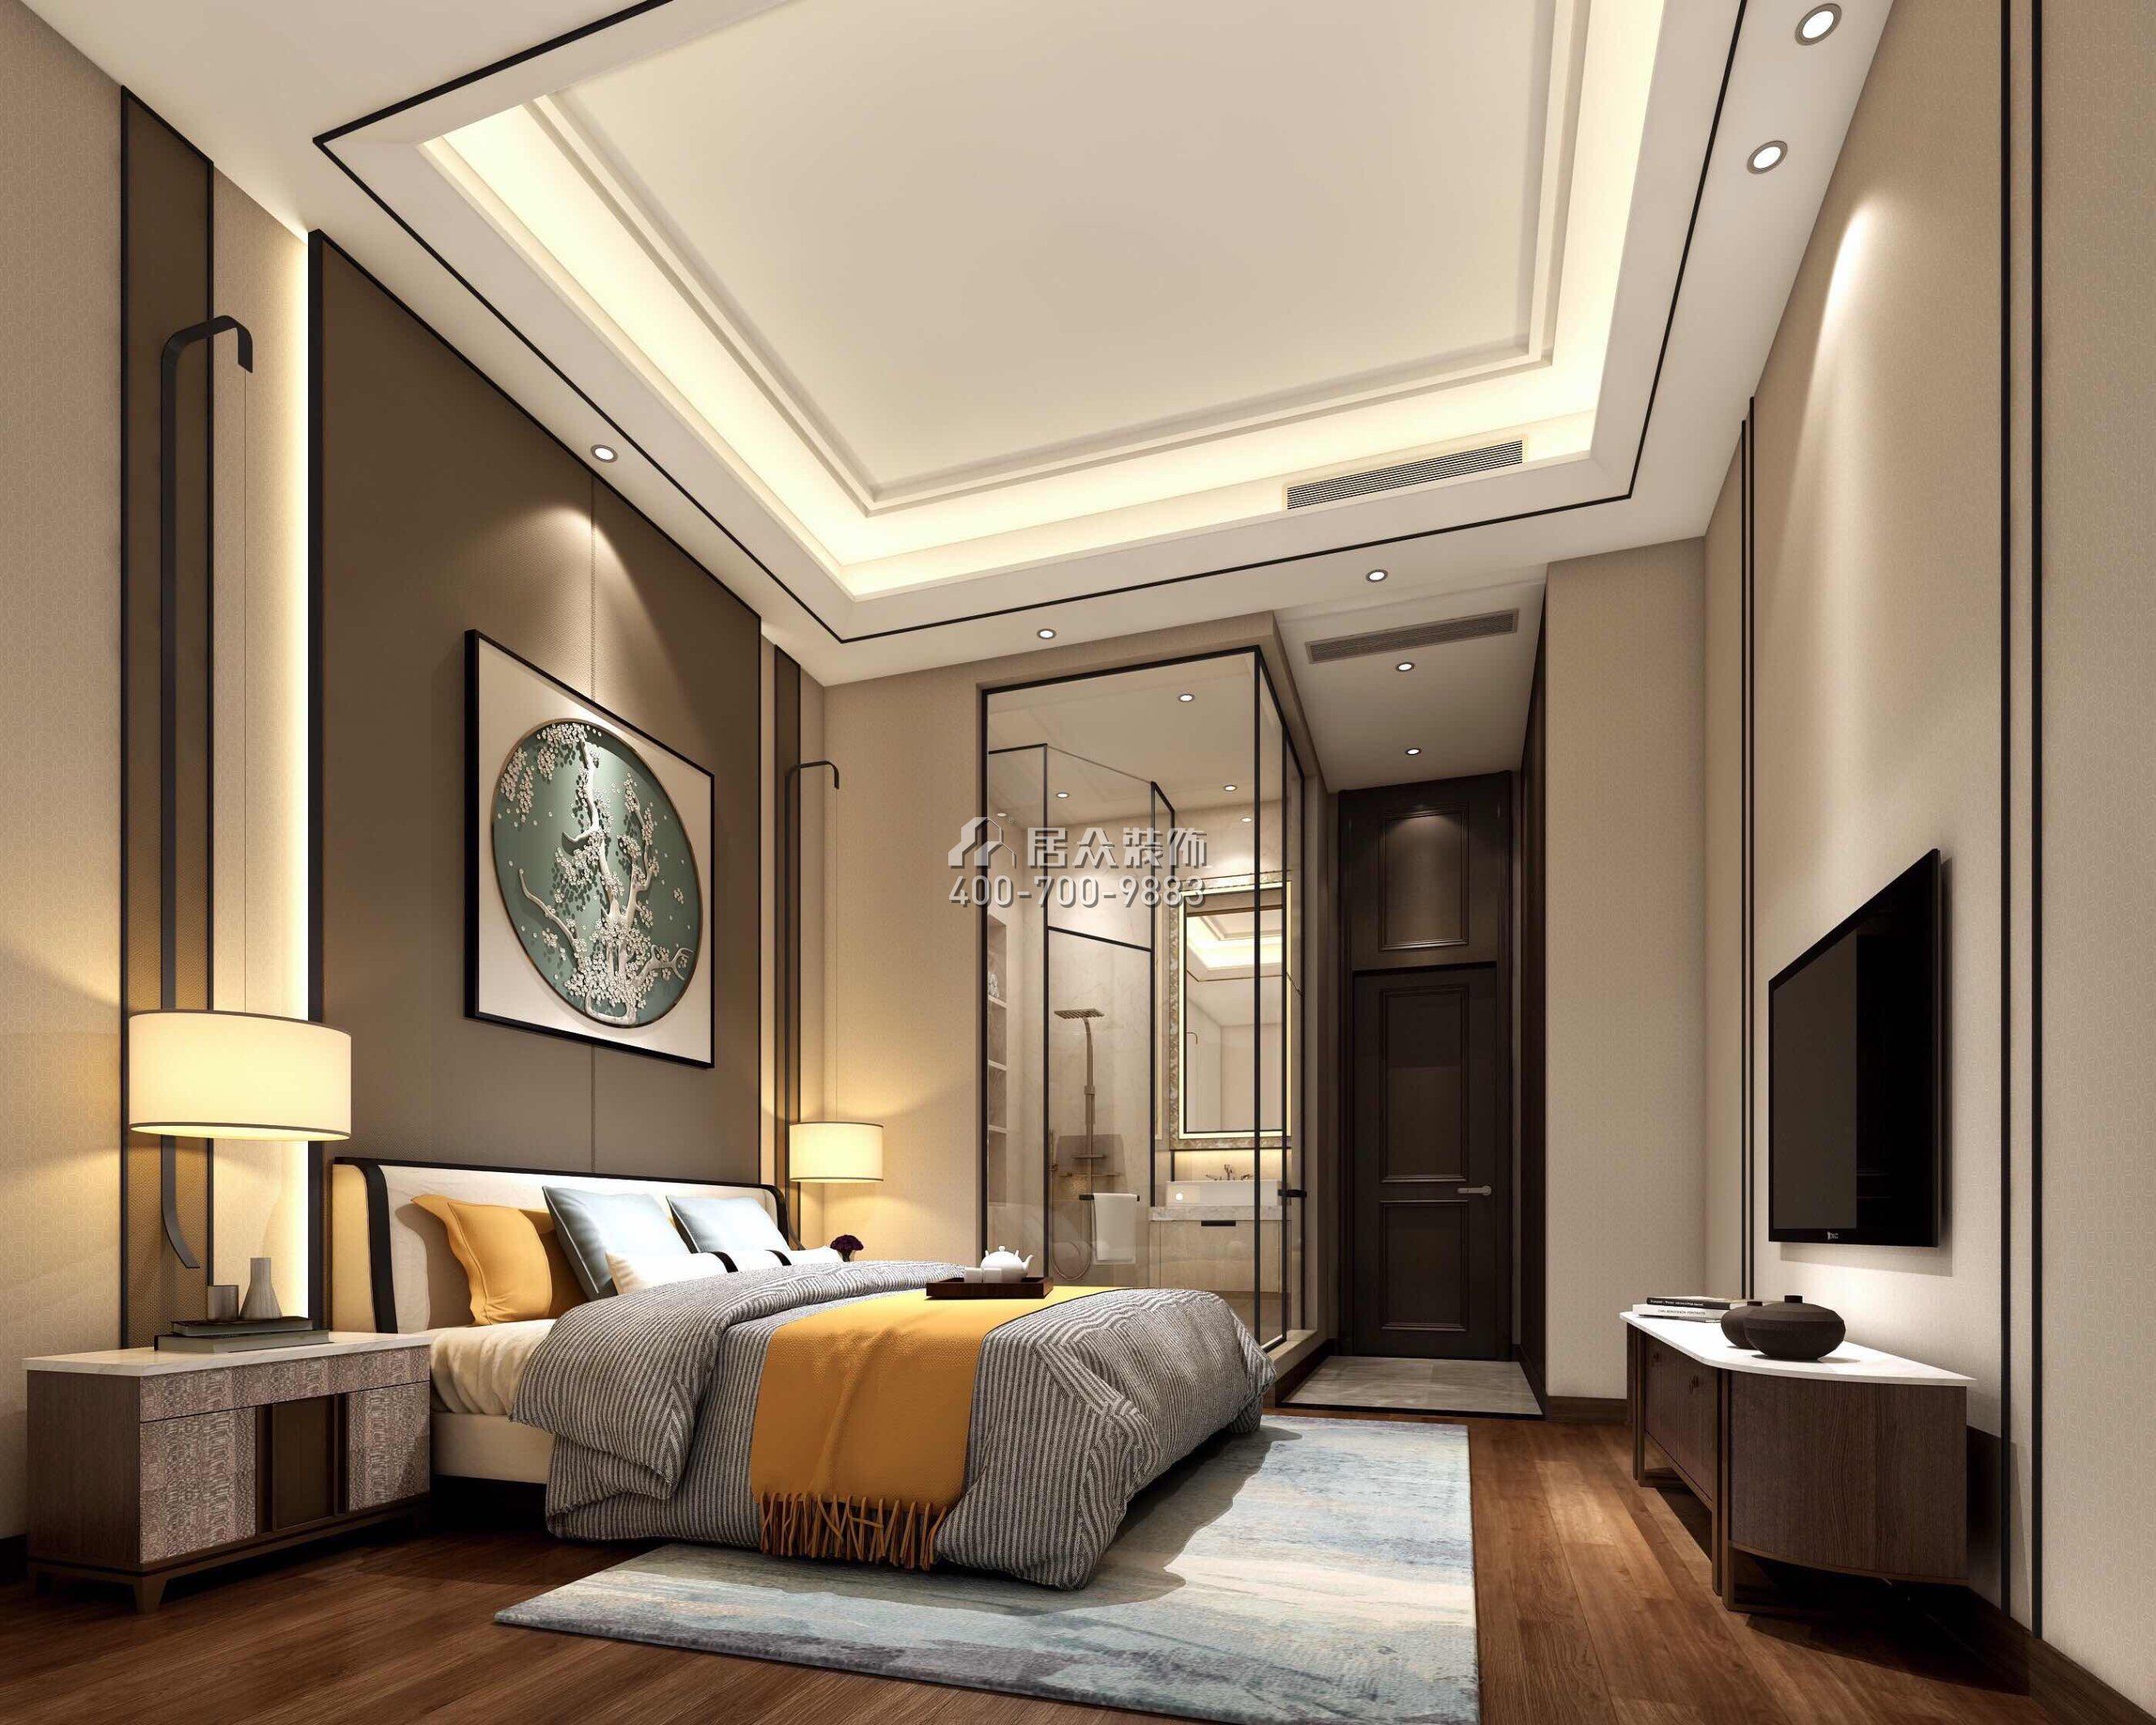 帝庭园300平方米中式风格平层户型卧室装修效果图